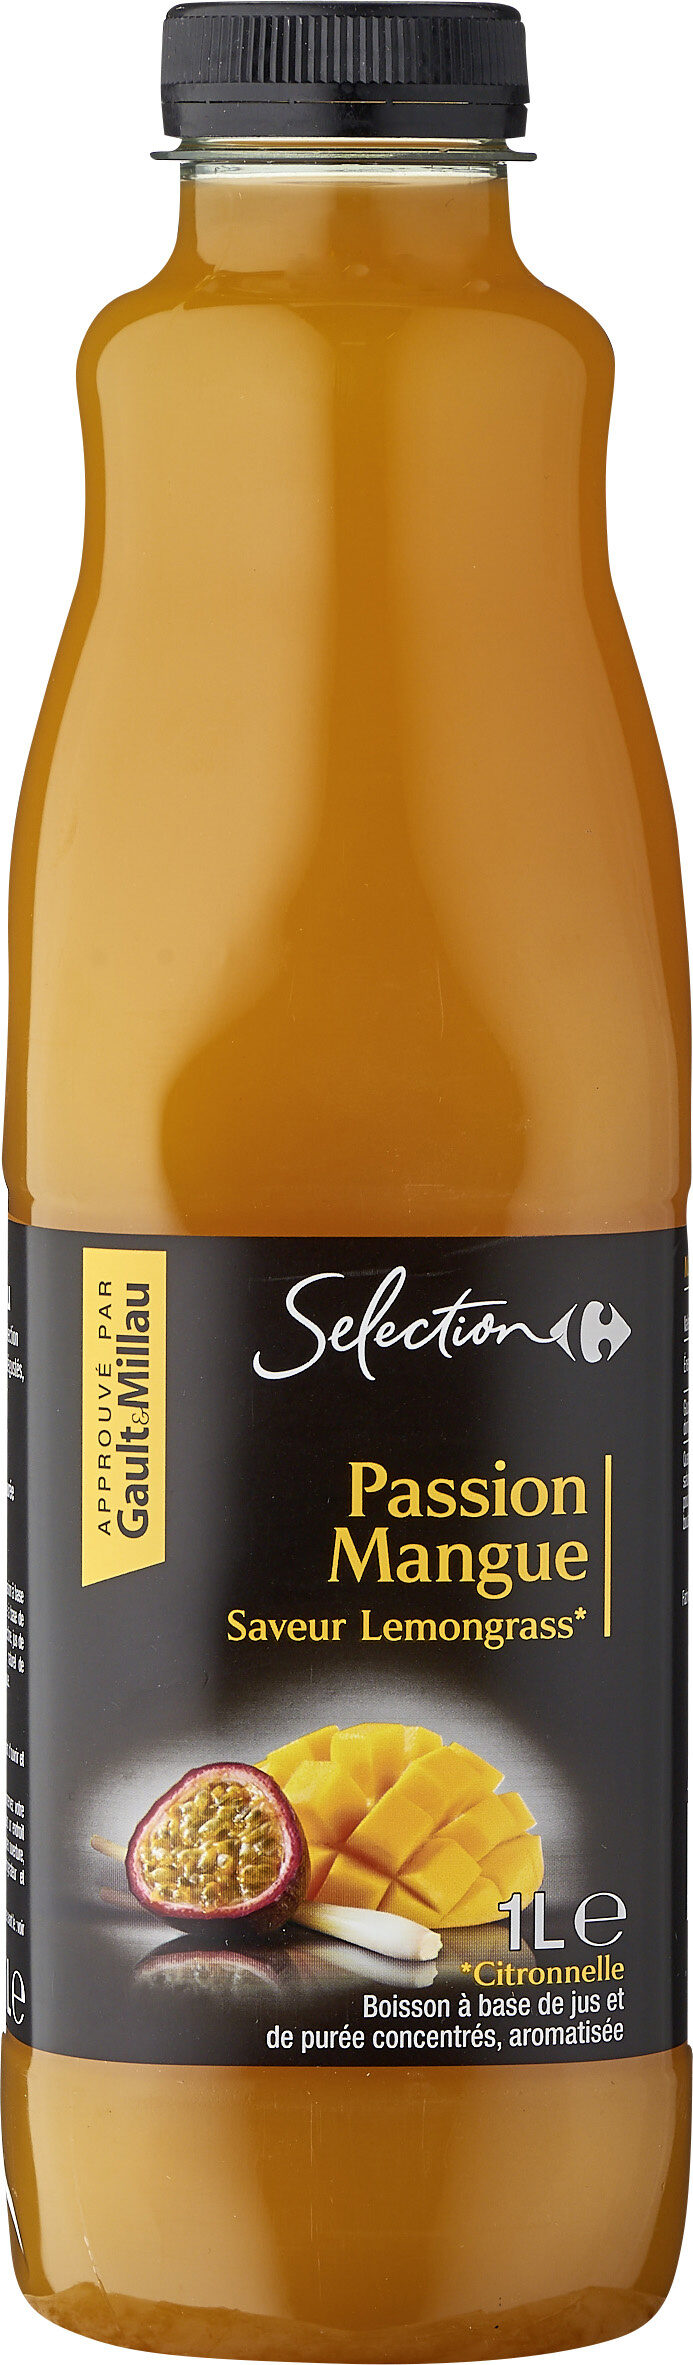 Passion Mangue Saveur Citronnelle - Producte - fr